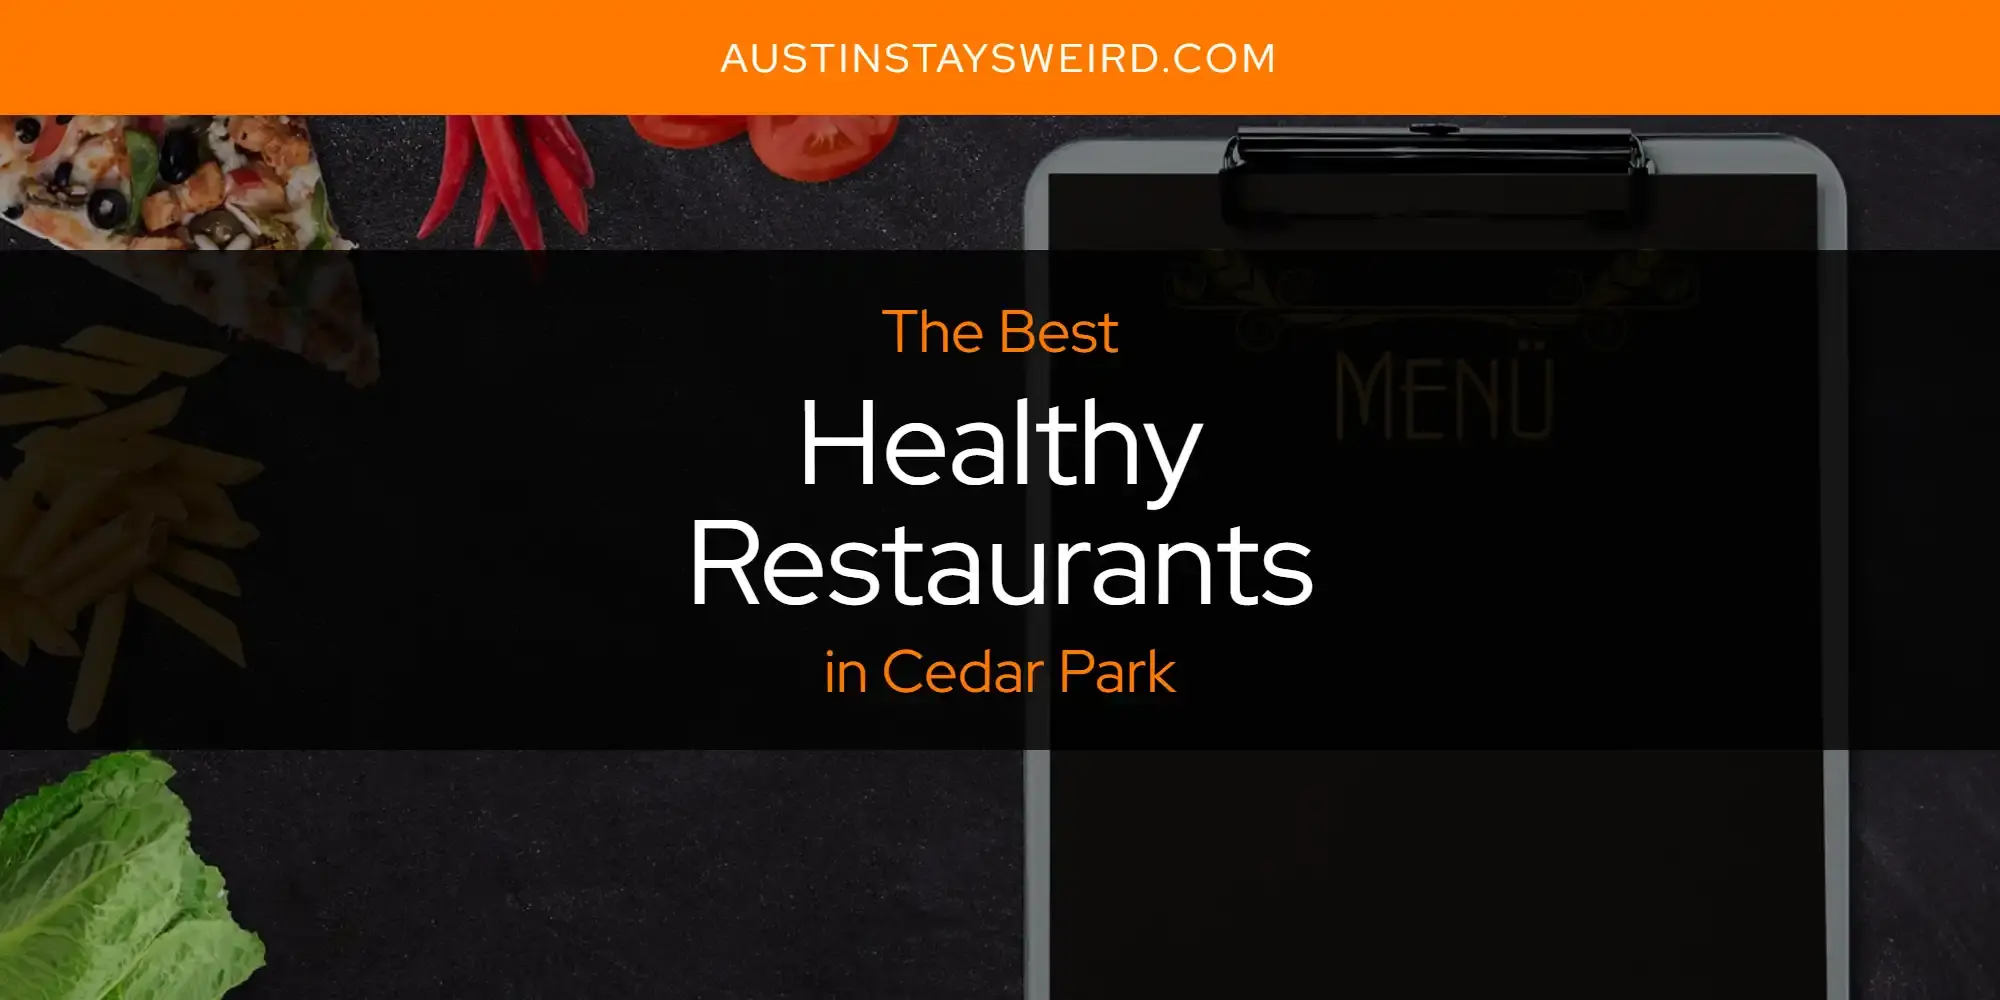 Best Healthy Restaurants in Cedar Park? Here's the Top 8